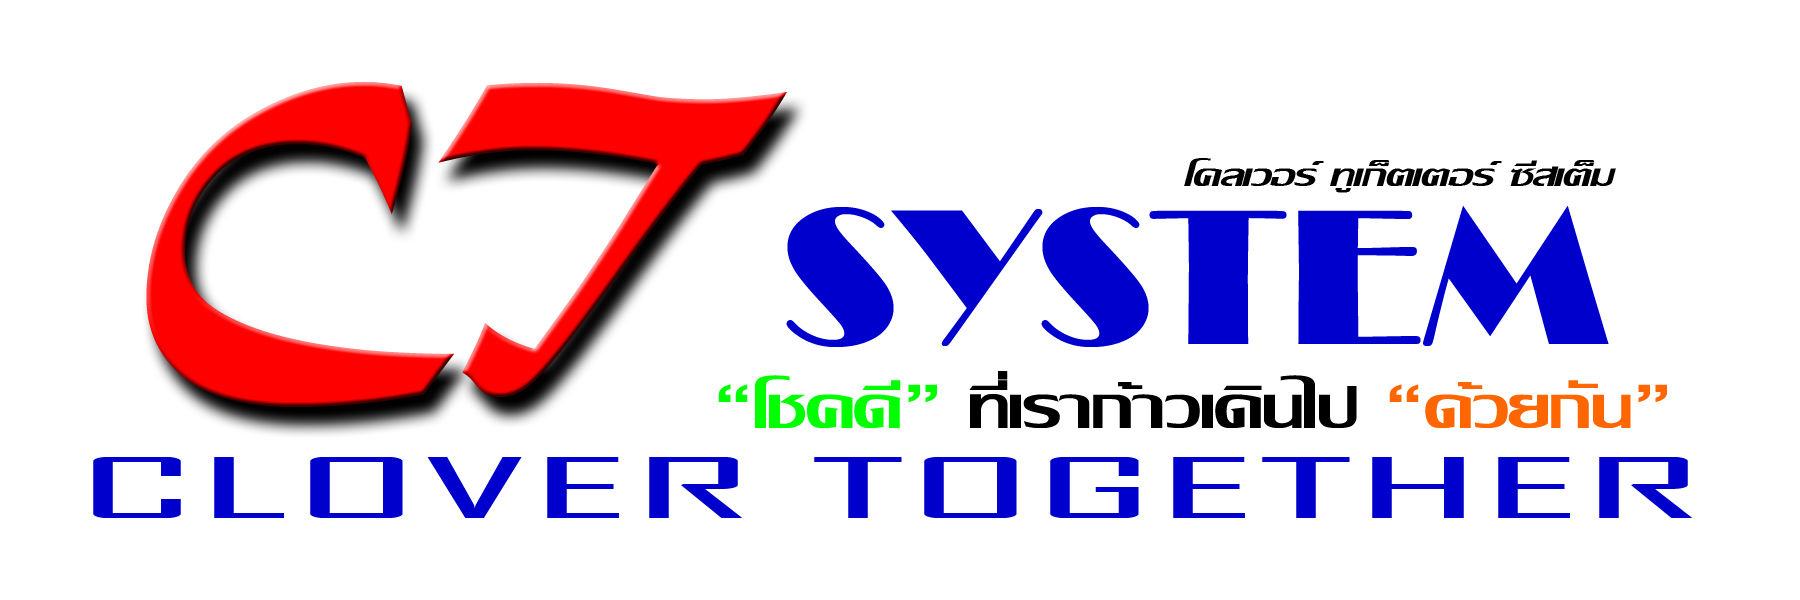 Clover Together System(CT System) logo โลโก้